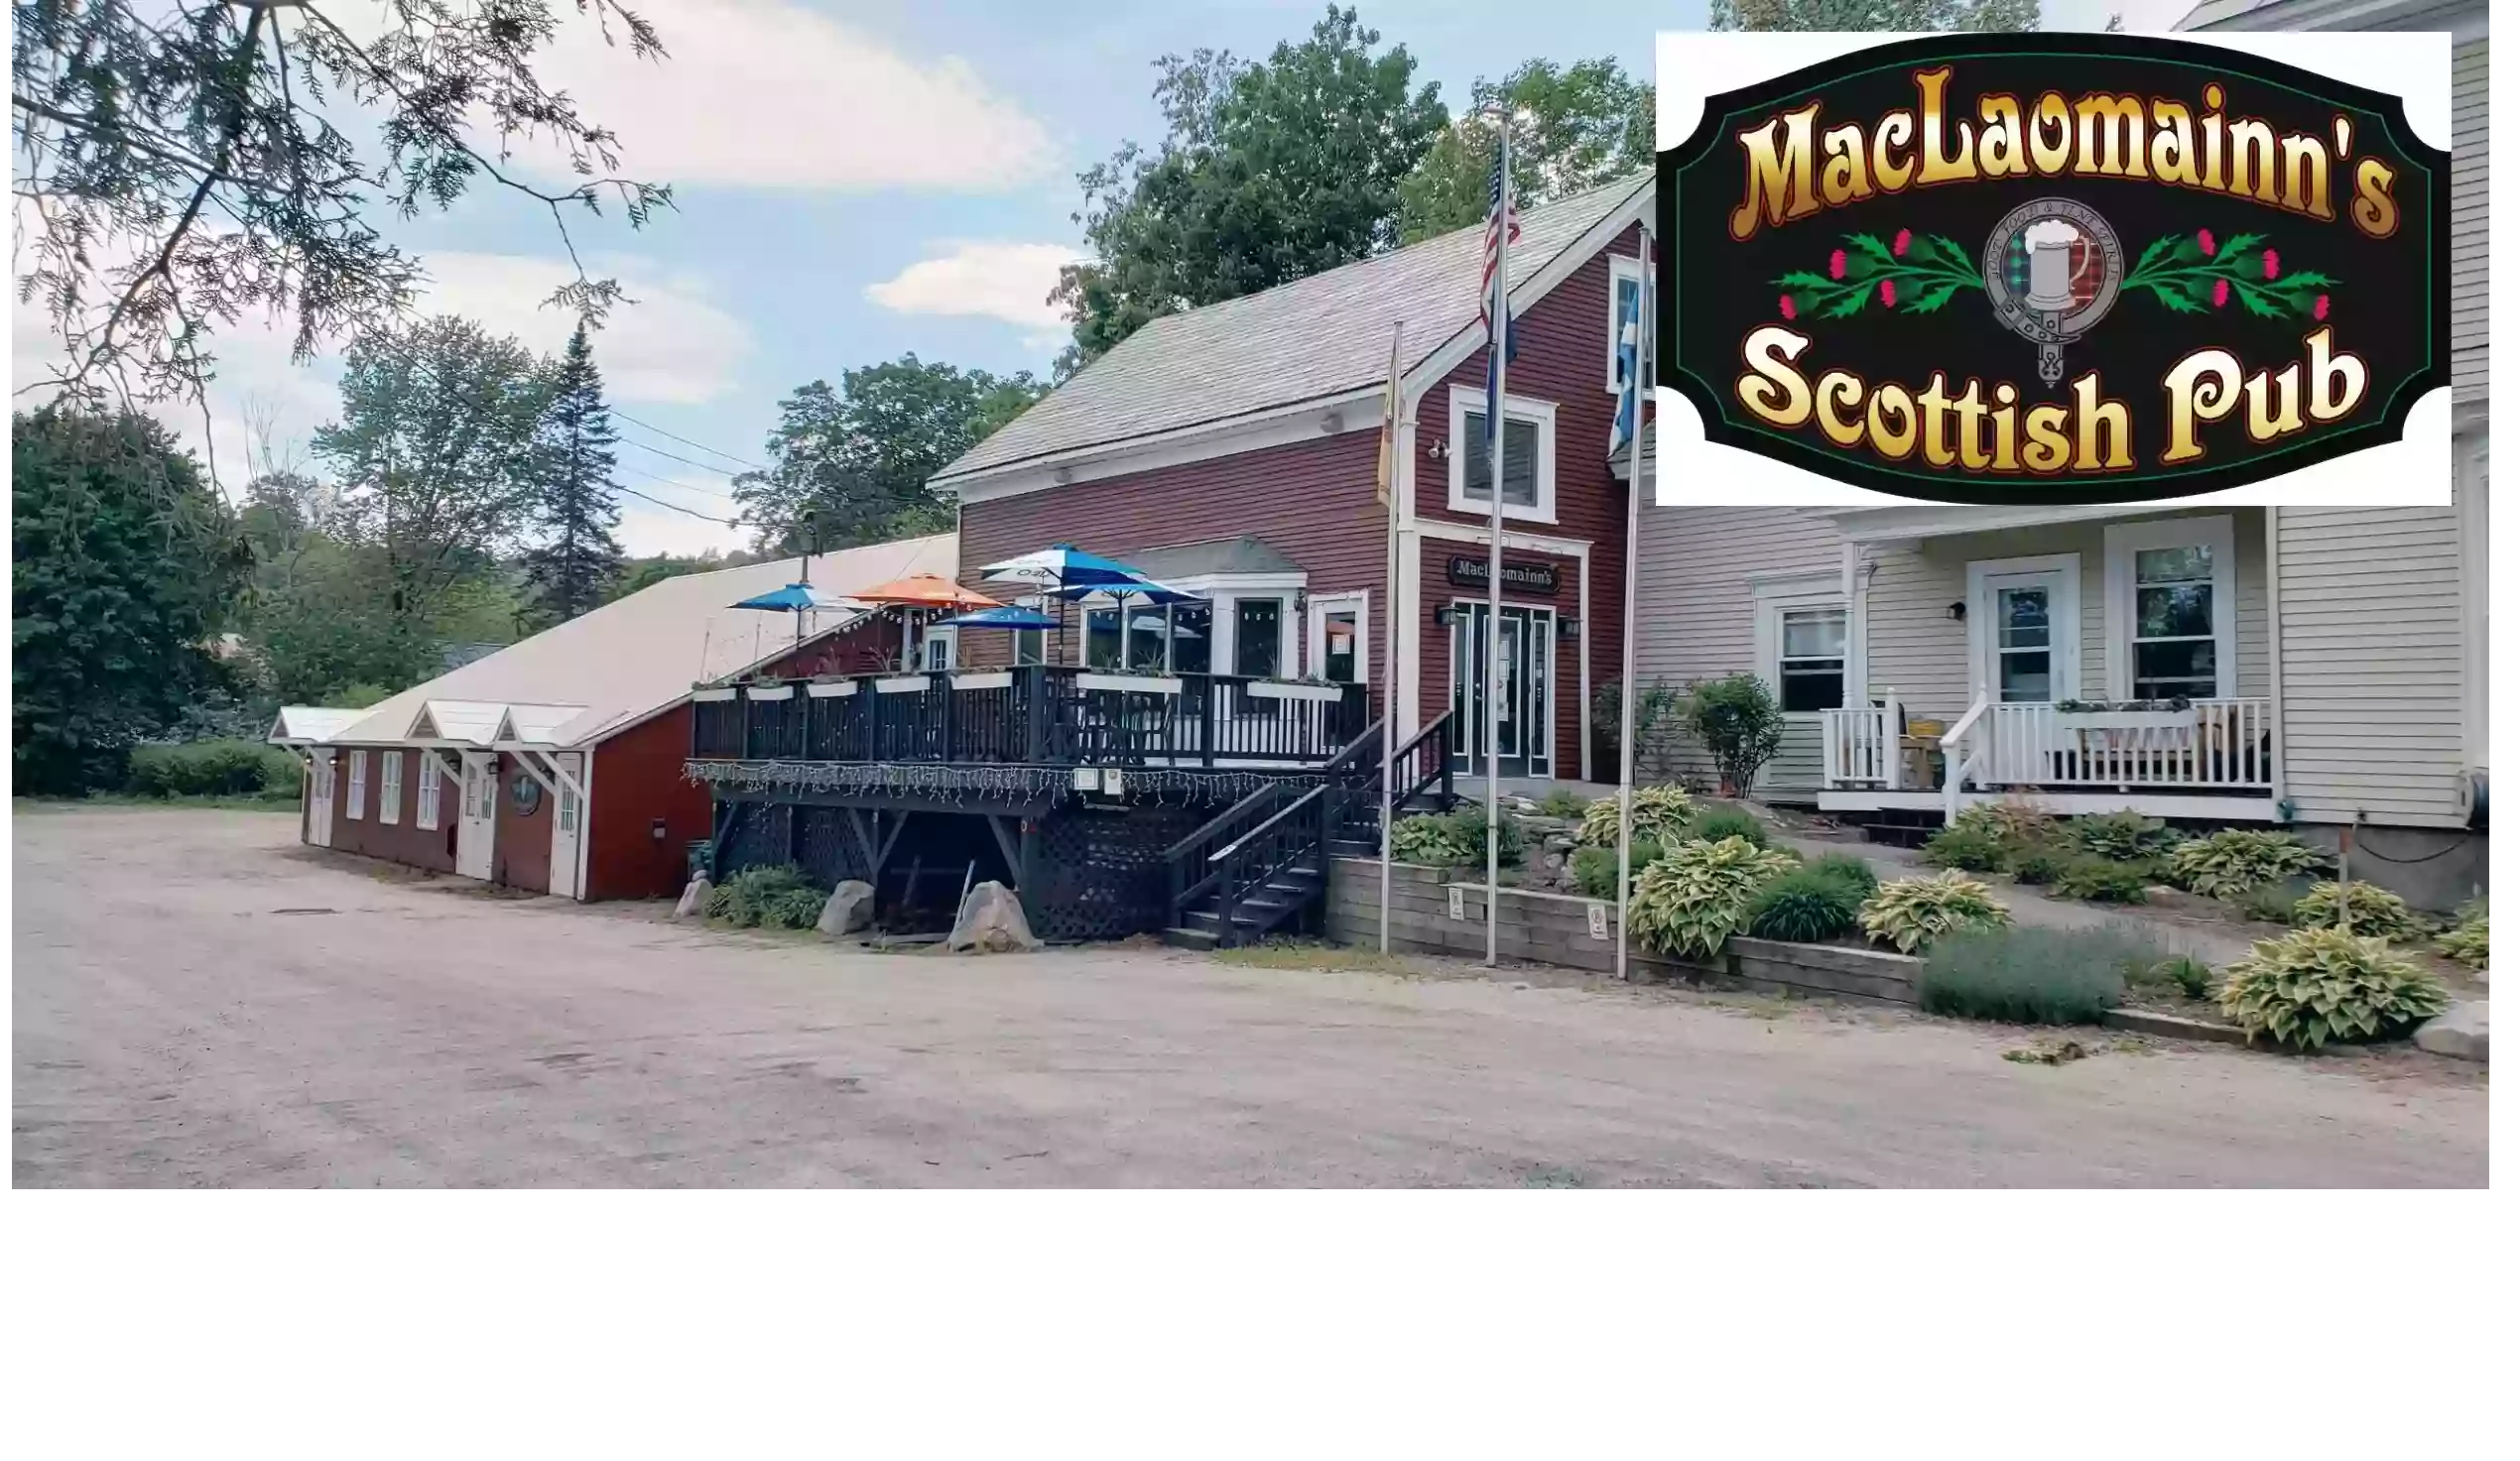 MacLaomainn's Scottish Pub